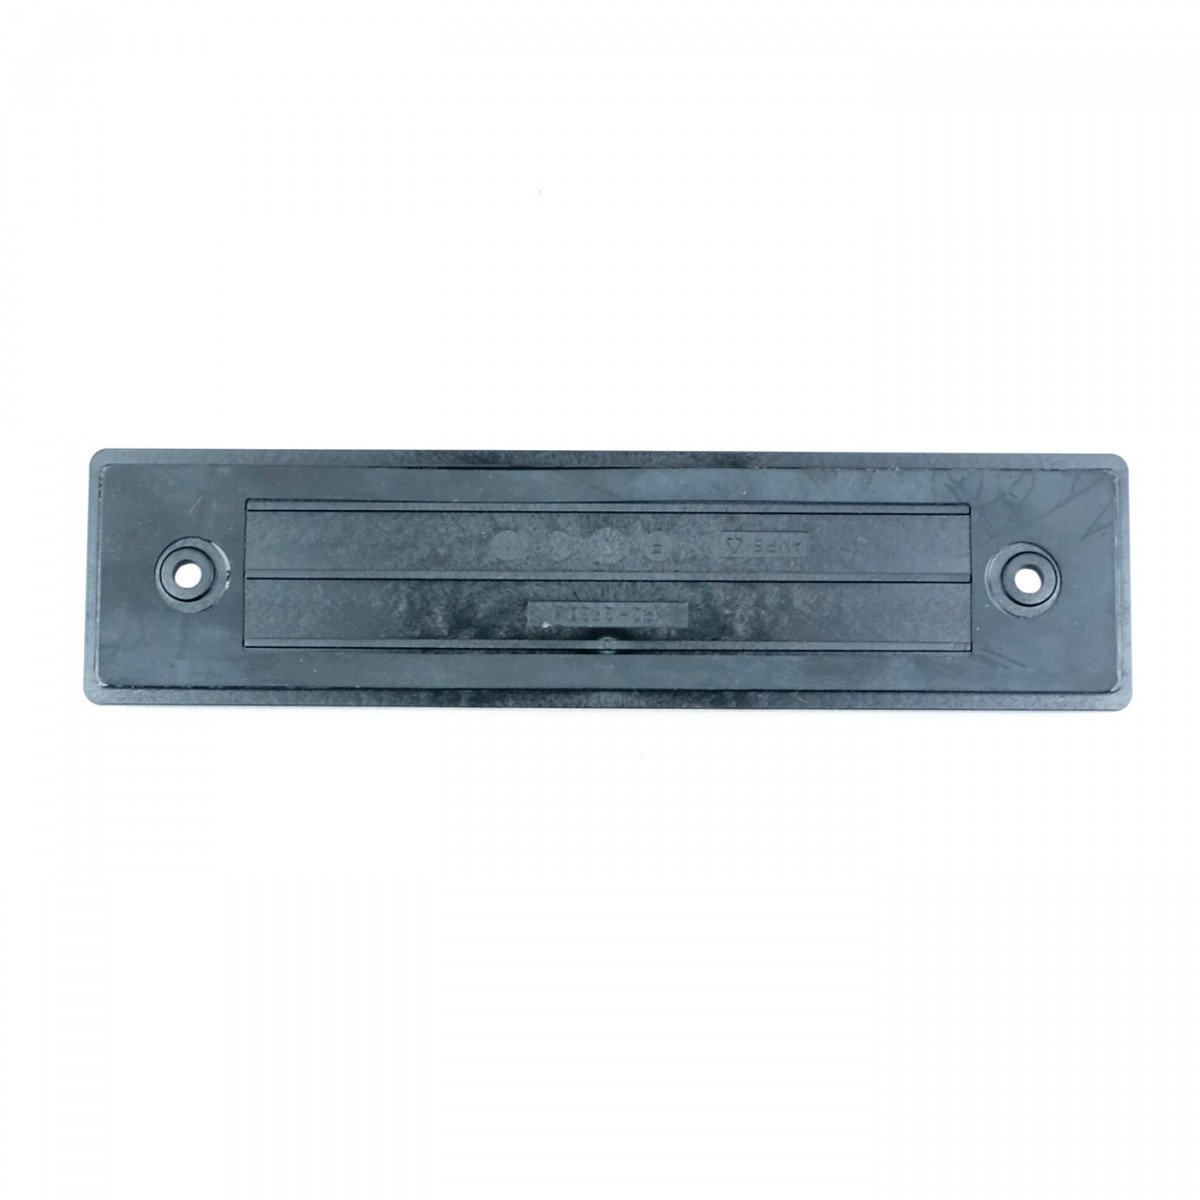 SEPURA AMPS-Abdeckplatte für Rückseite des Bedienteils SCC1 / SCC3 300-00784